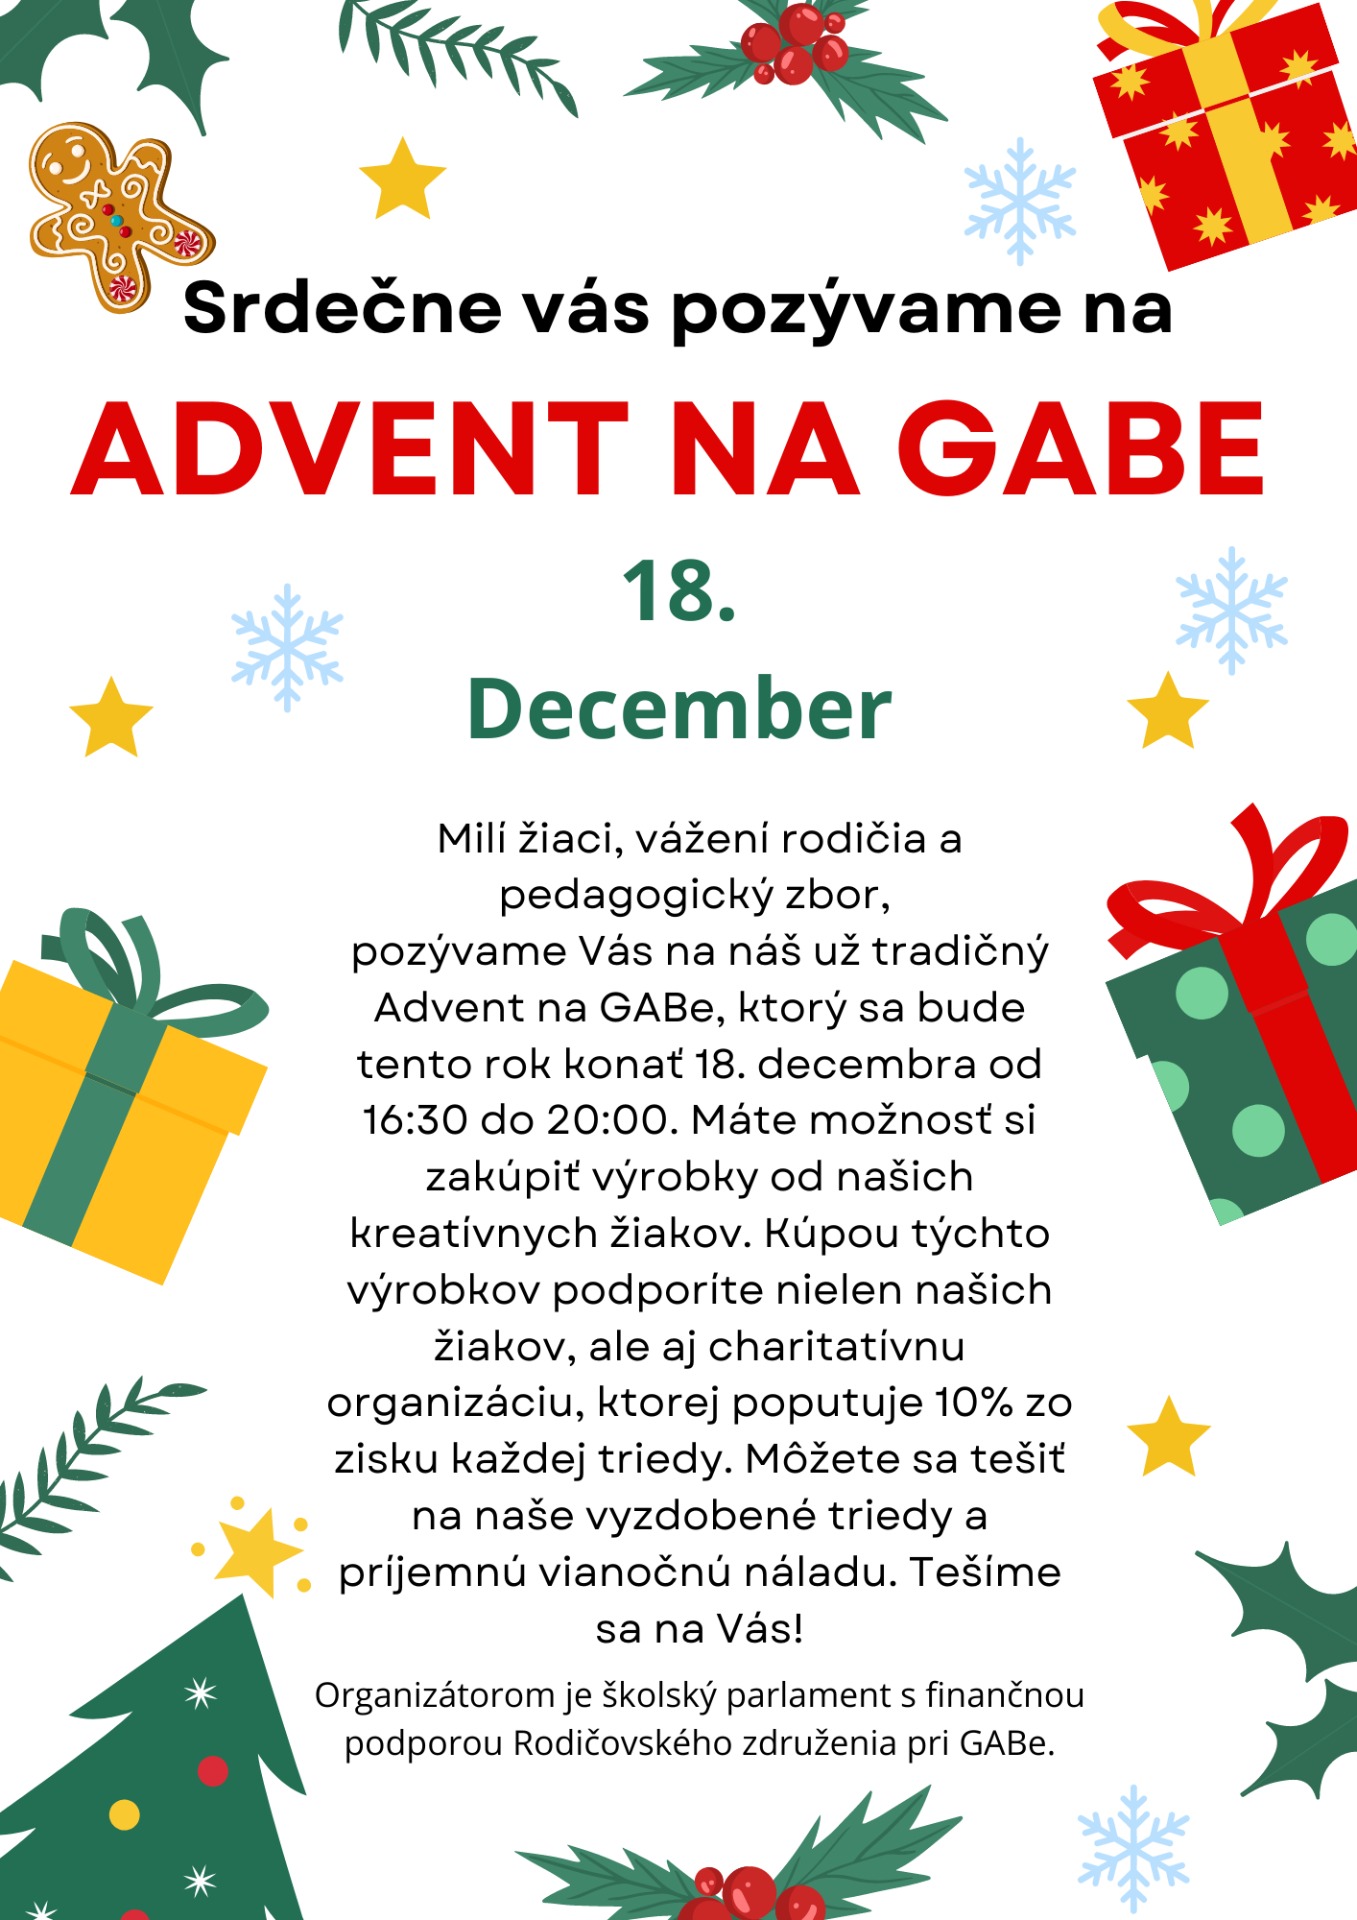 Plagát akcie Advent na GAB-e 18.12.2023. Informácie sú uvedené priamo v správe.